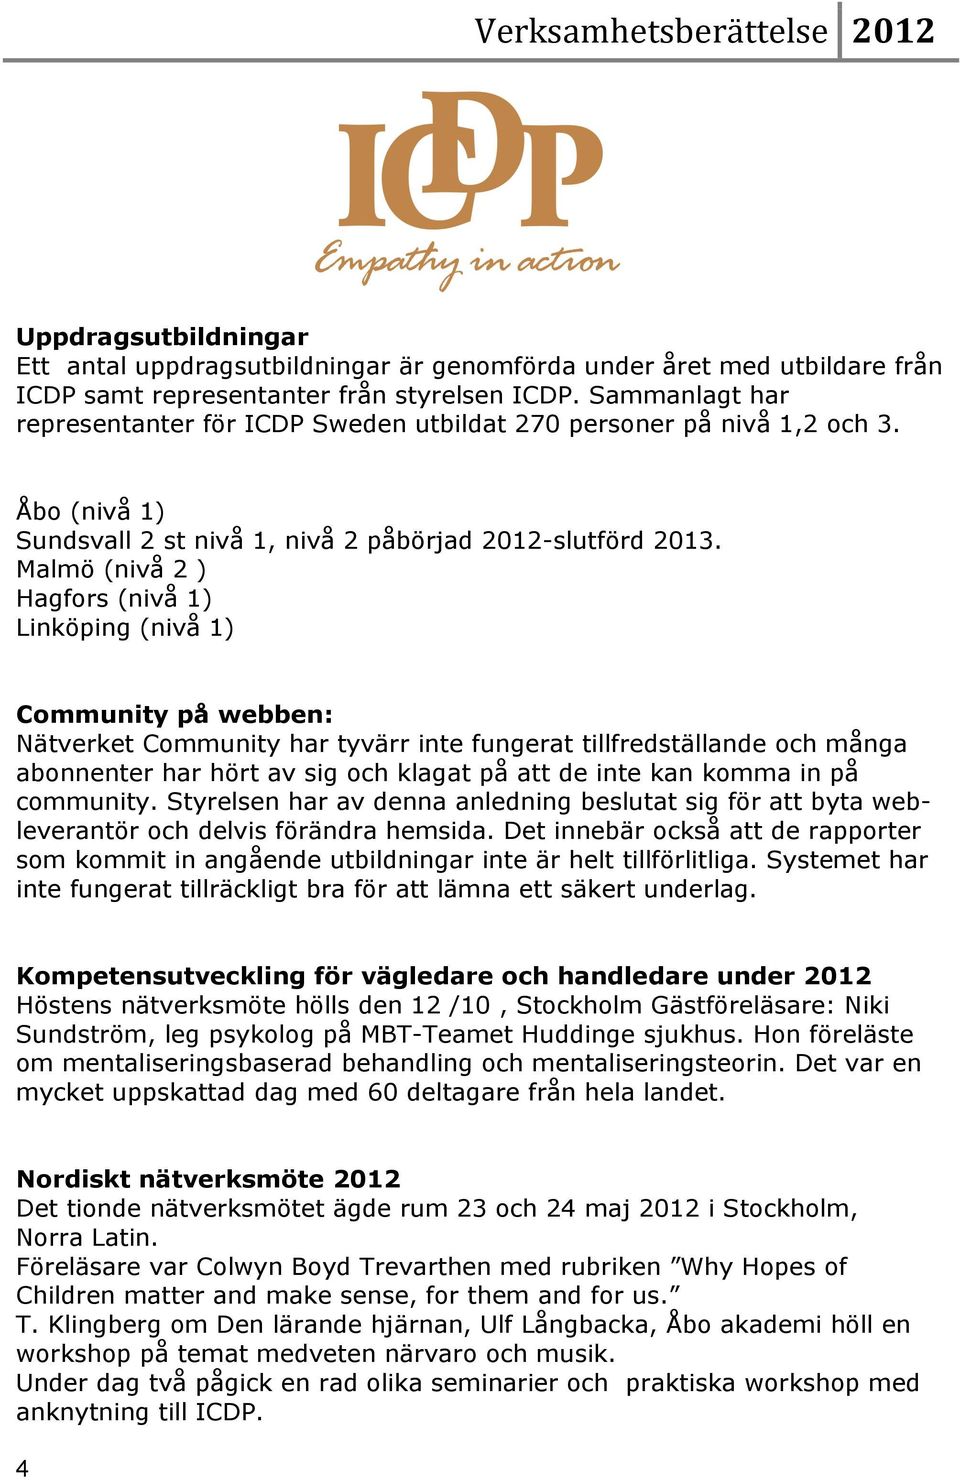 Malmö (nivå 2 ) Hagfors (nivå 1) Linköping (nivå 1) Community på webben: Nätverket Community har tyvärr inte fungerat tillfredställande och många abonnenter har hört av sig och klagat på att de inte